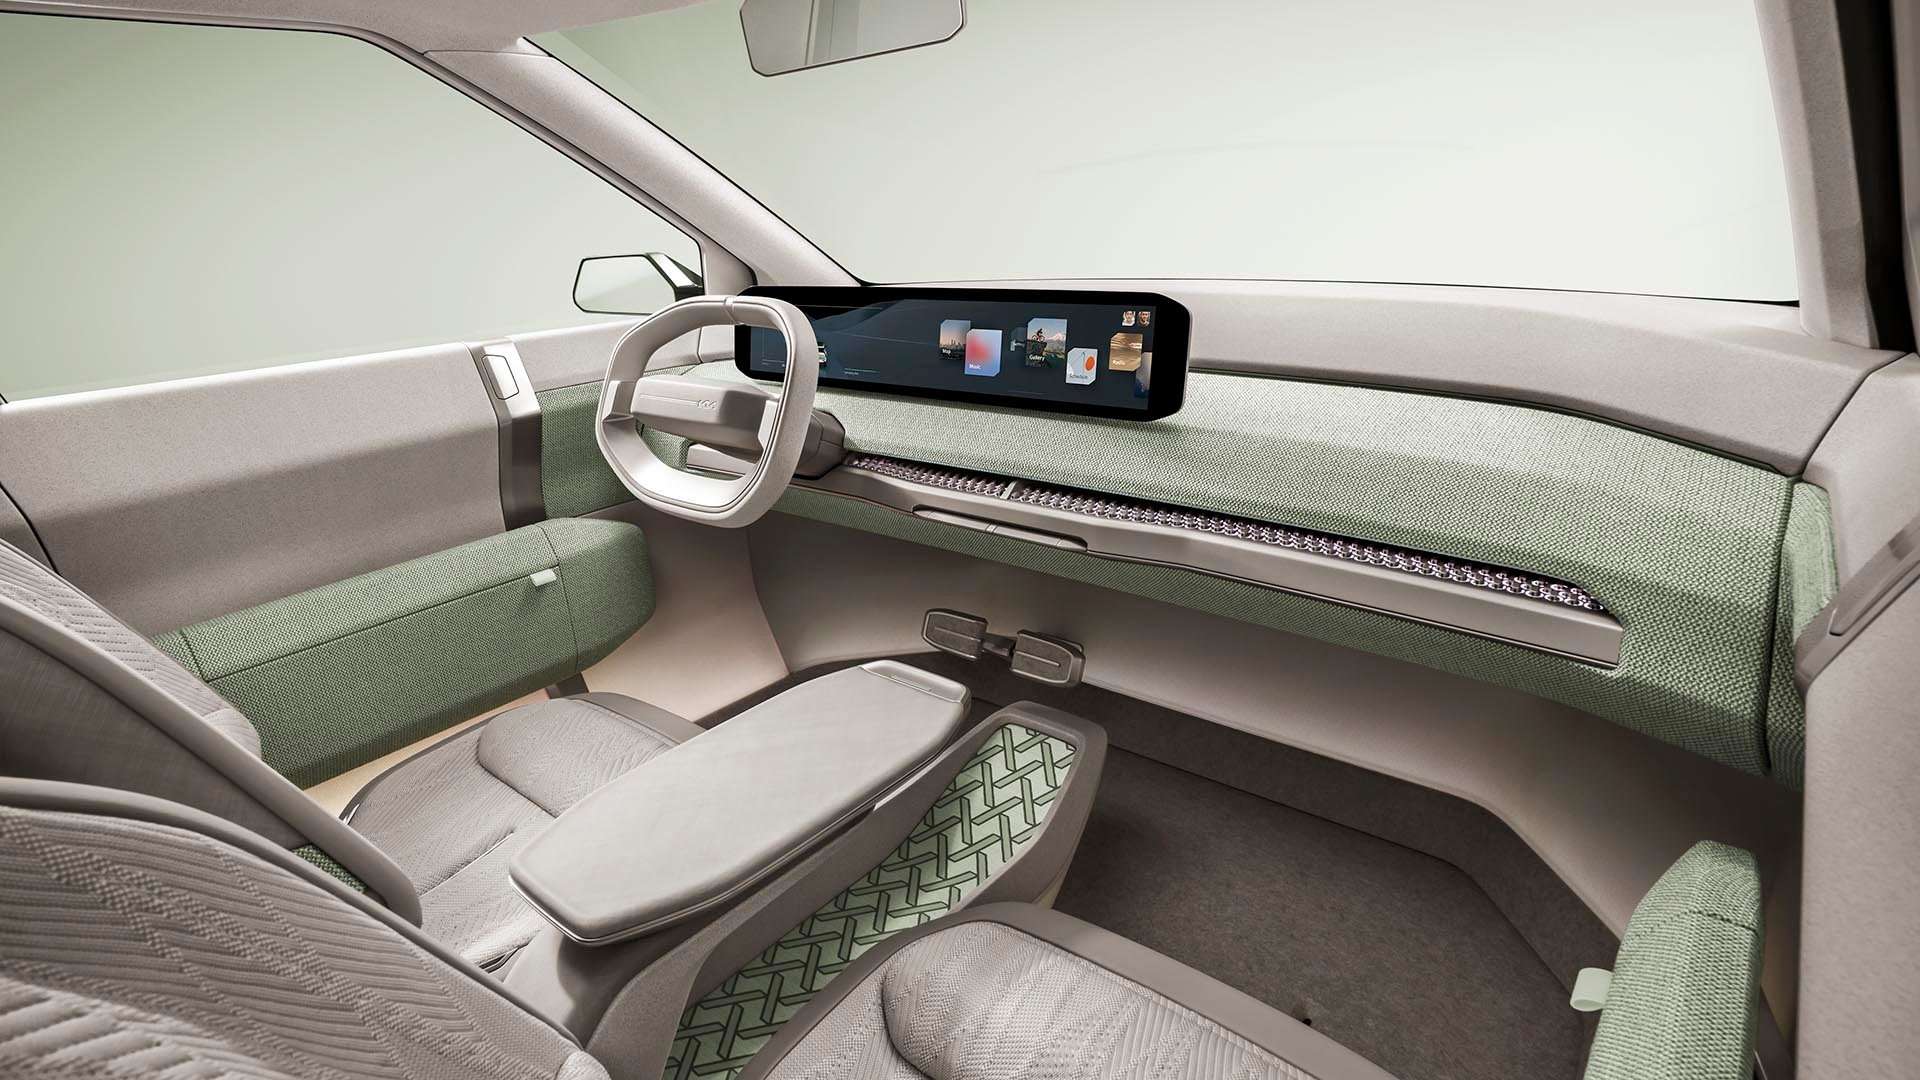 Kia EV3 Electric SUV साल के अंत तक हो सकती है लॉन्च, नई जानकारी आई सामने	